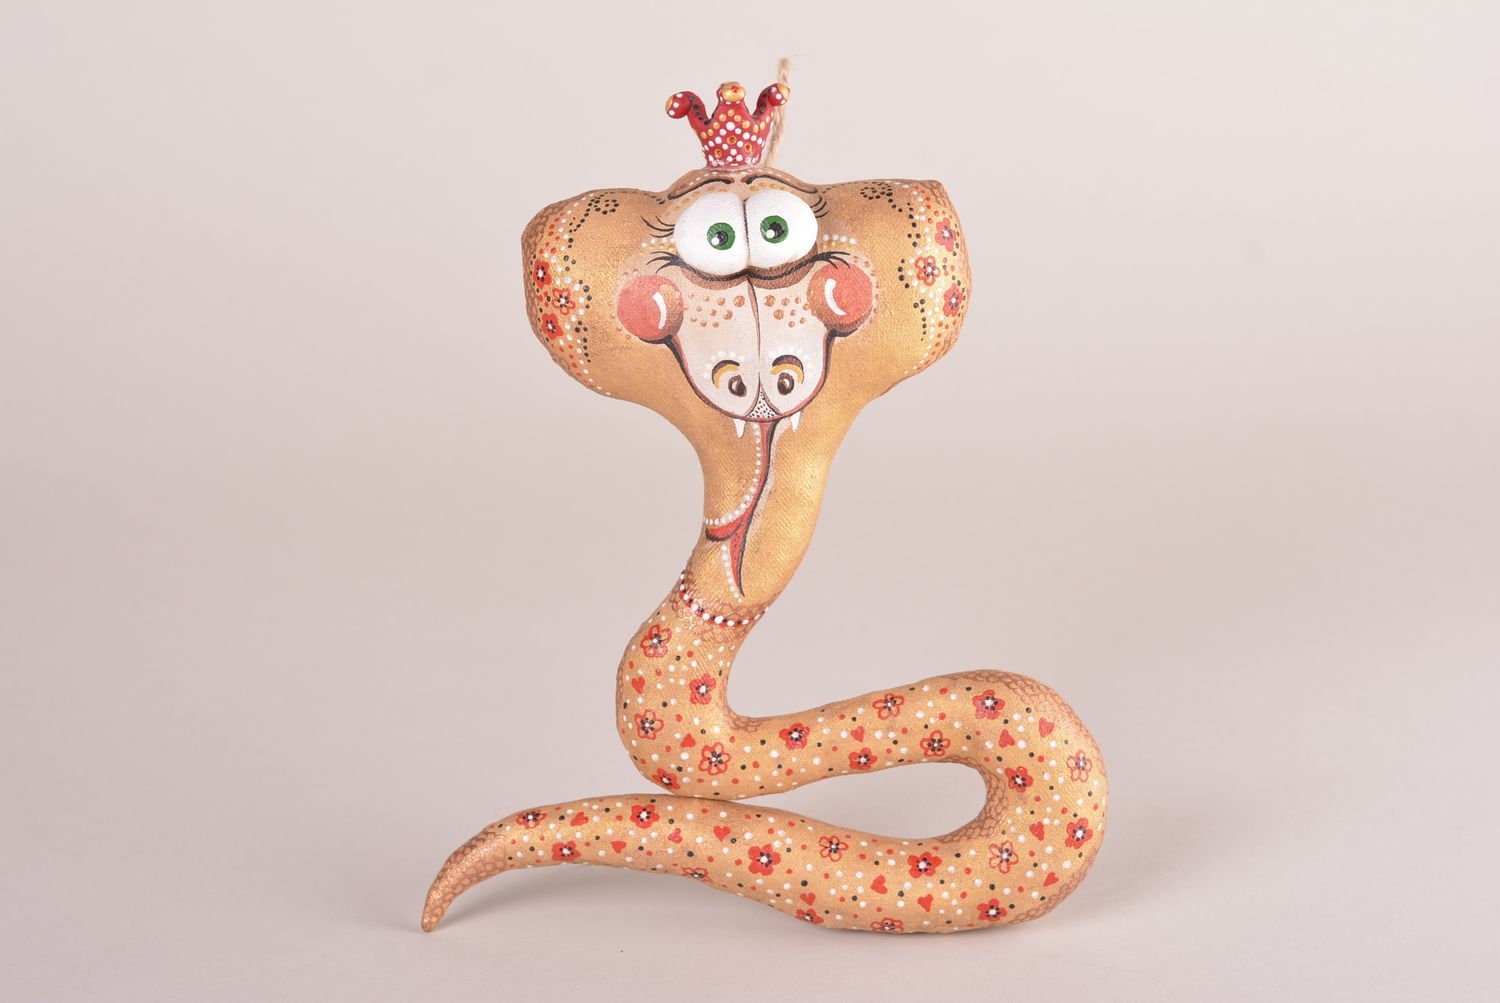 Игрушка ручной работы игрушка змея оригинальная игрушка для декора дома фото 1